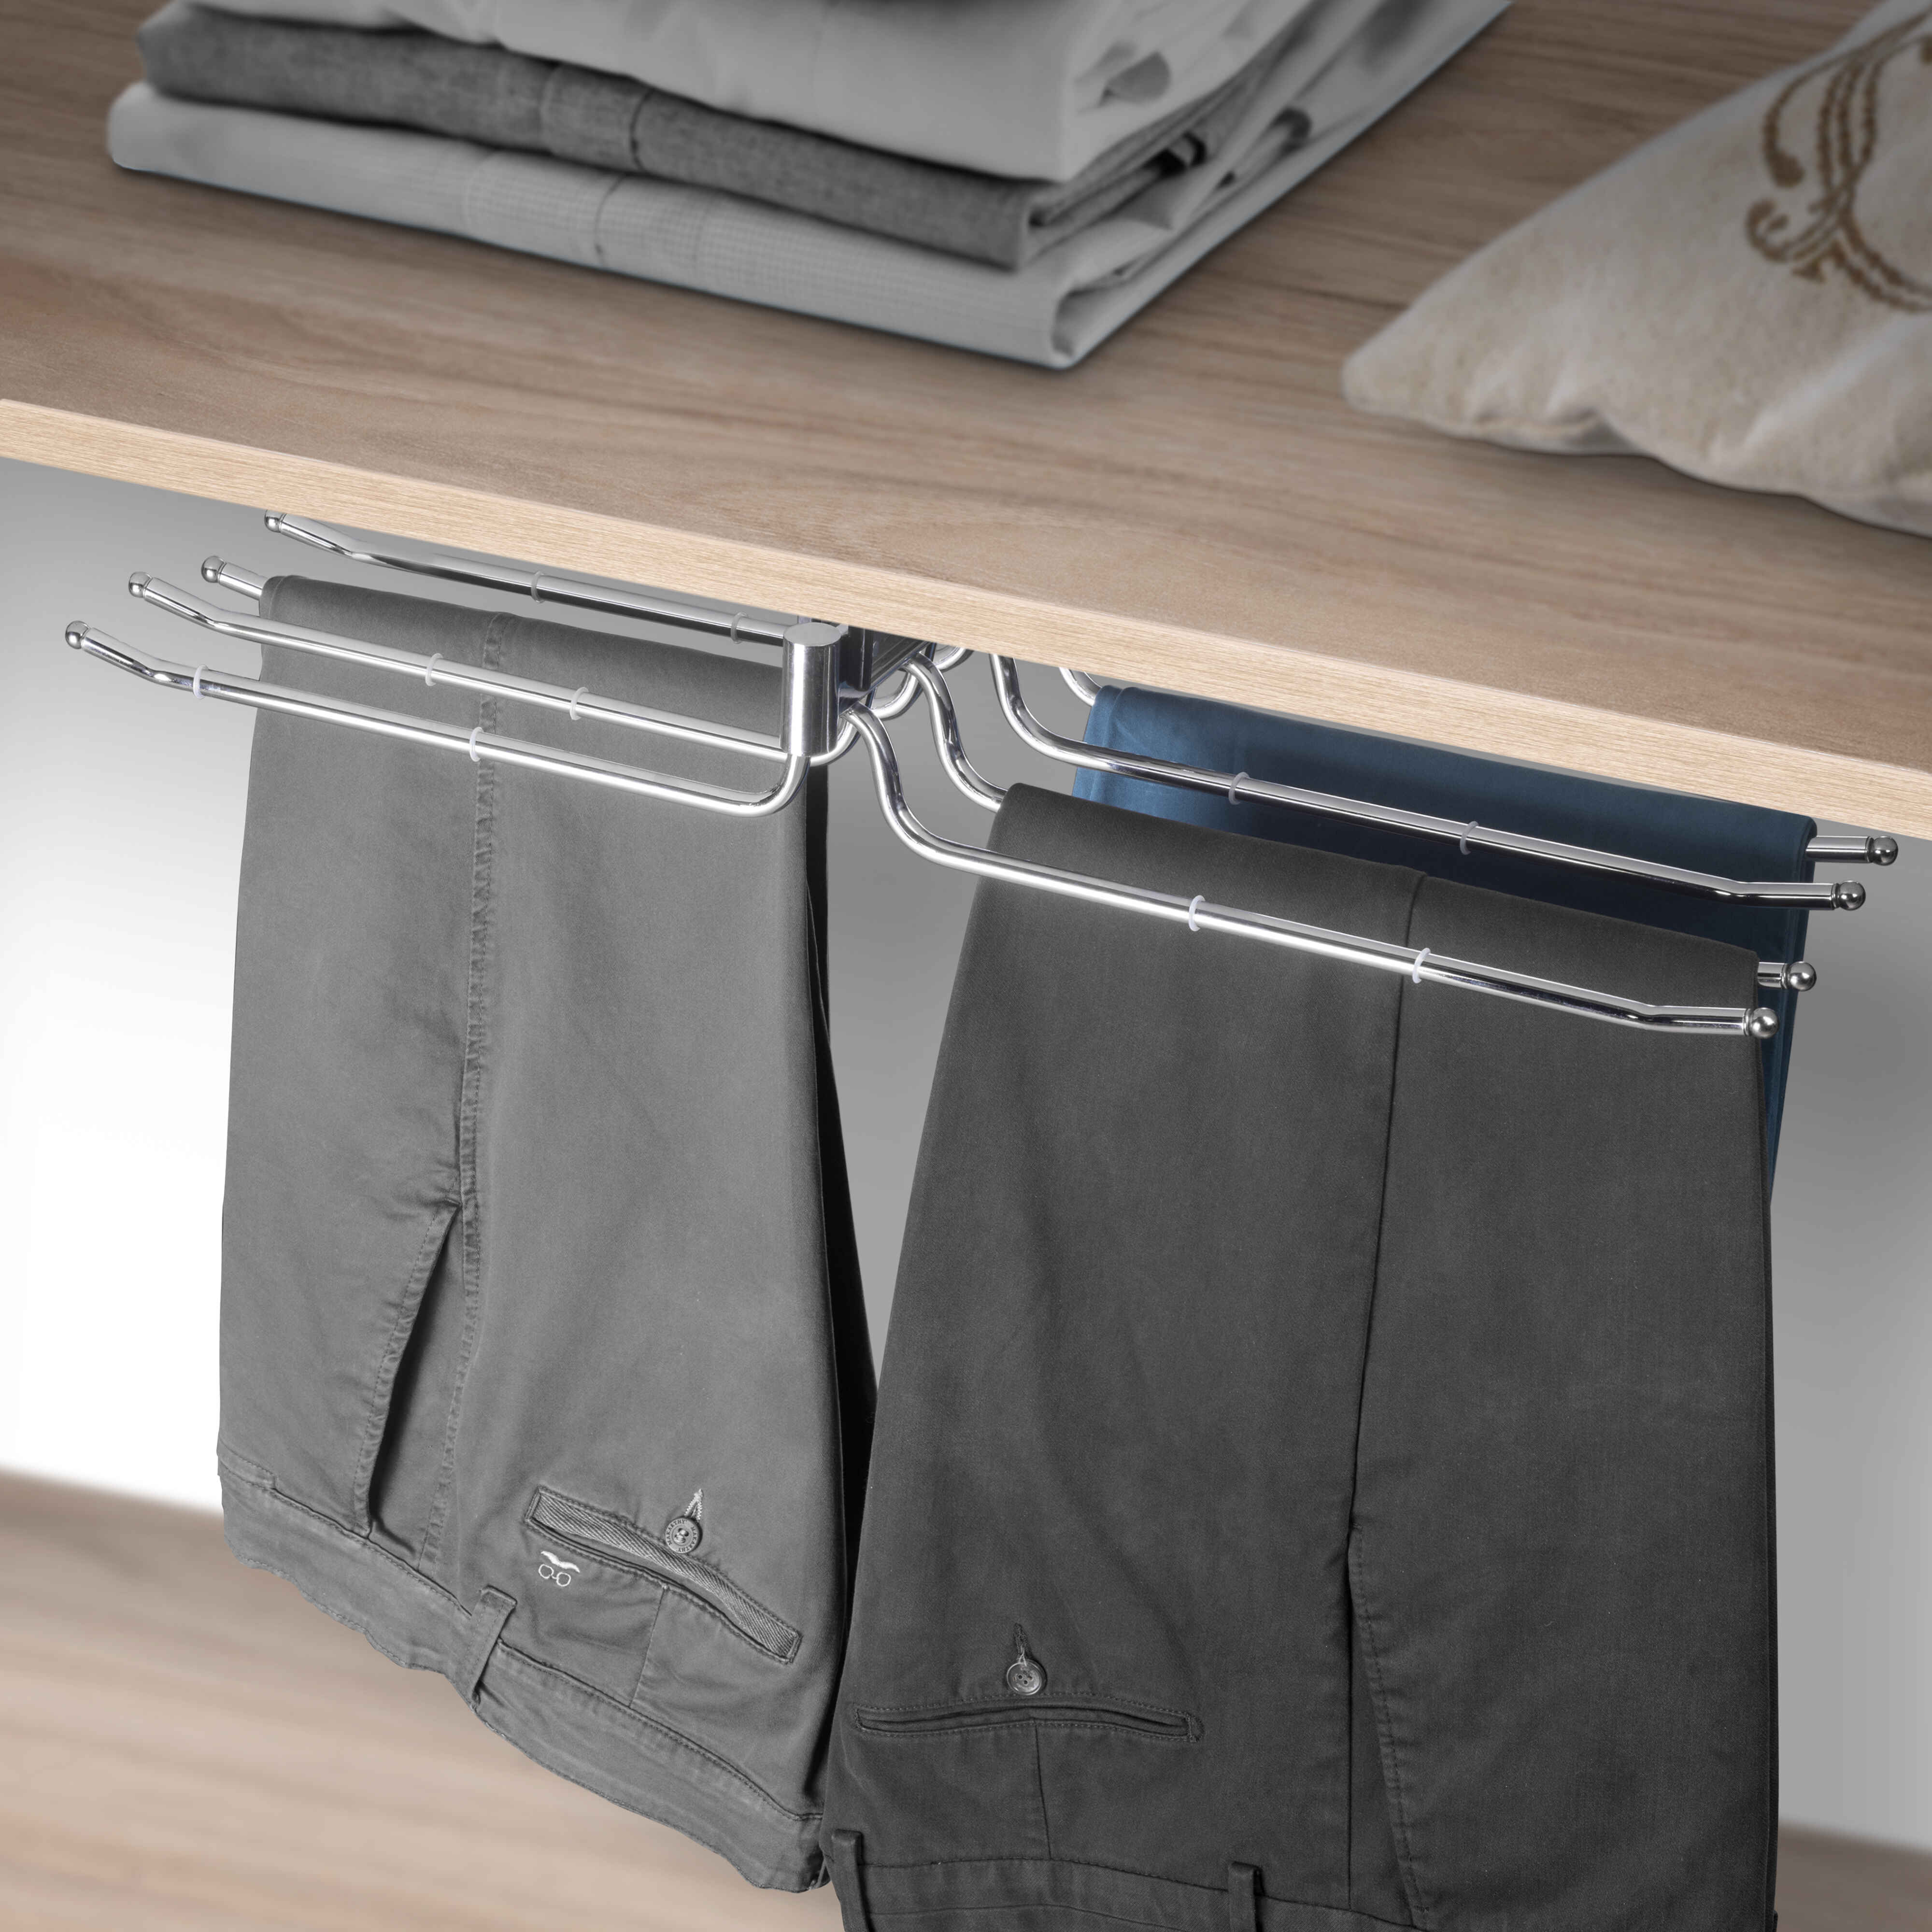 Pantalonero doble extraíble Self para armario., Cromado, Acero y Plástico